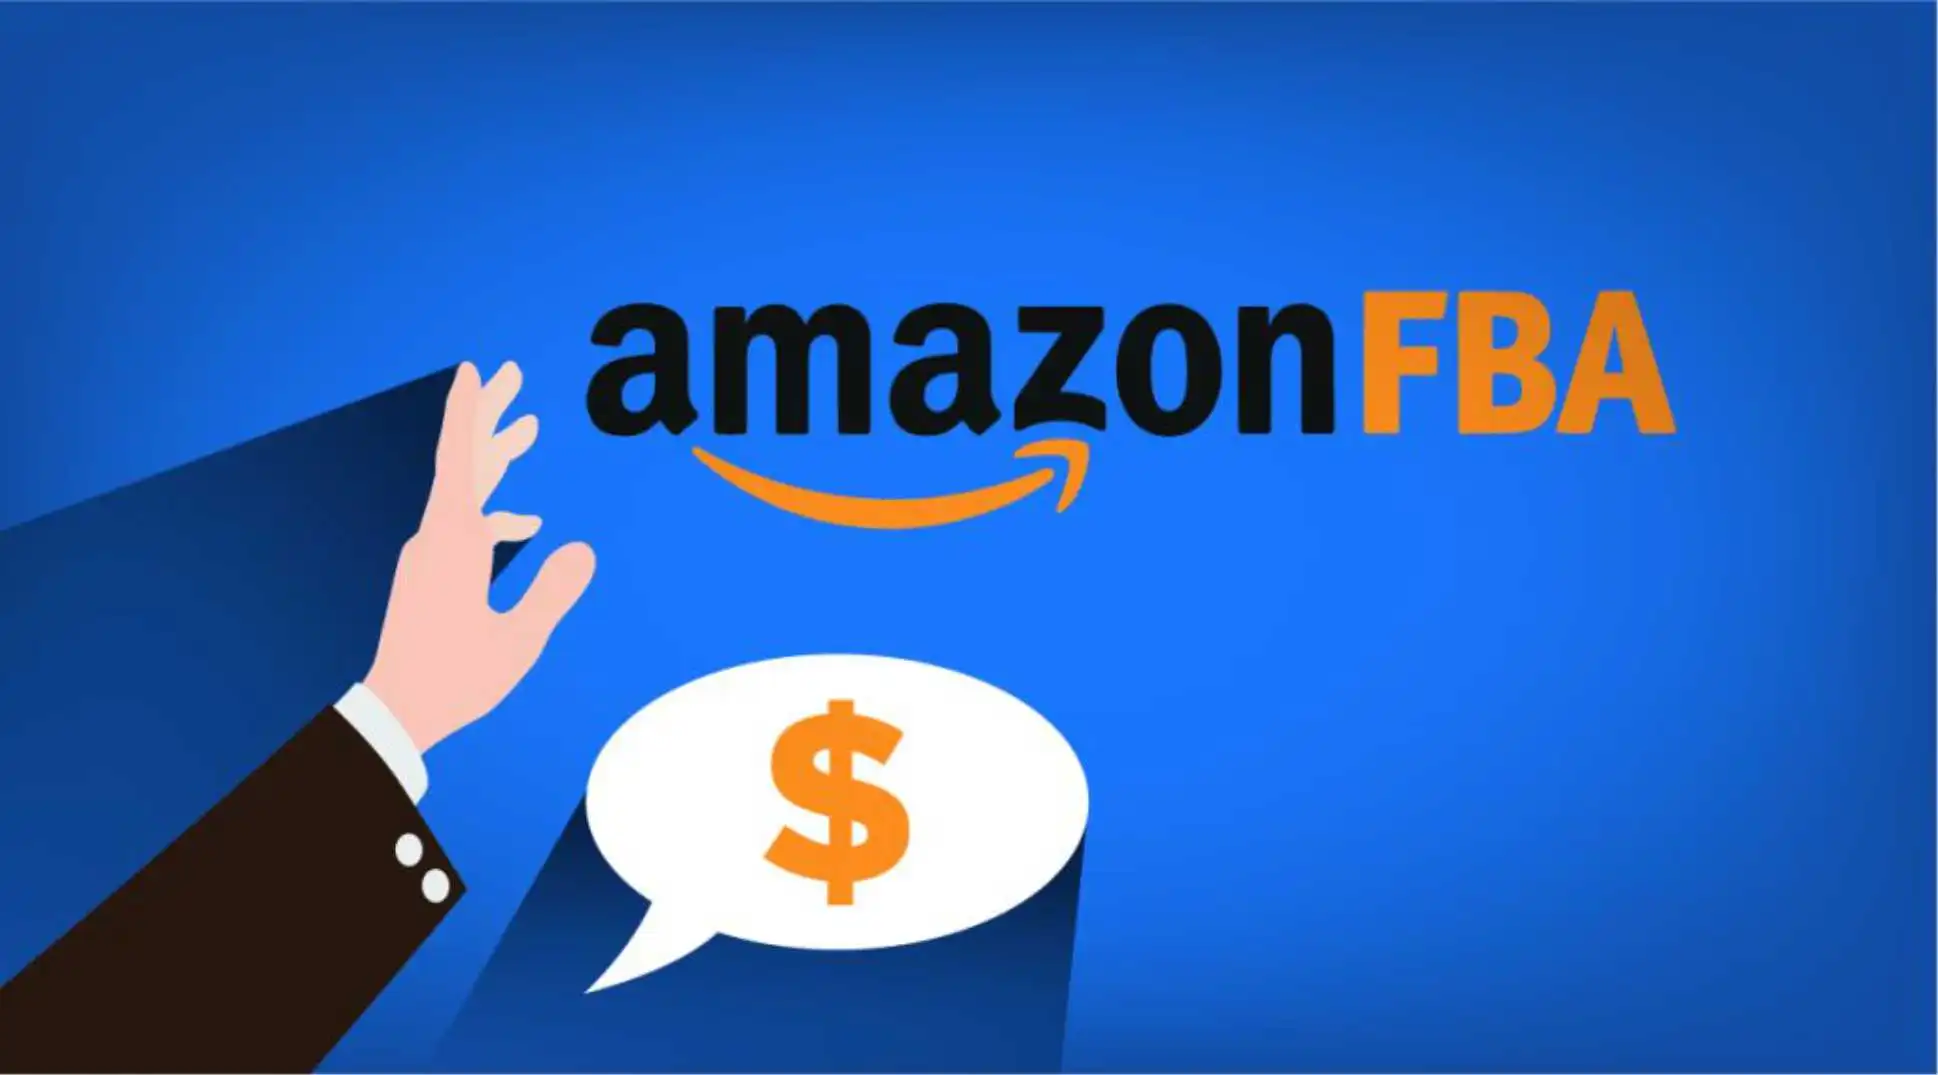 Amazon-FBA-Toolkit-img